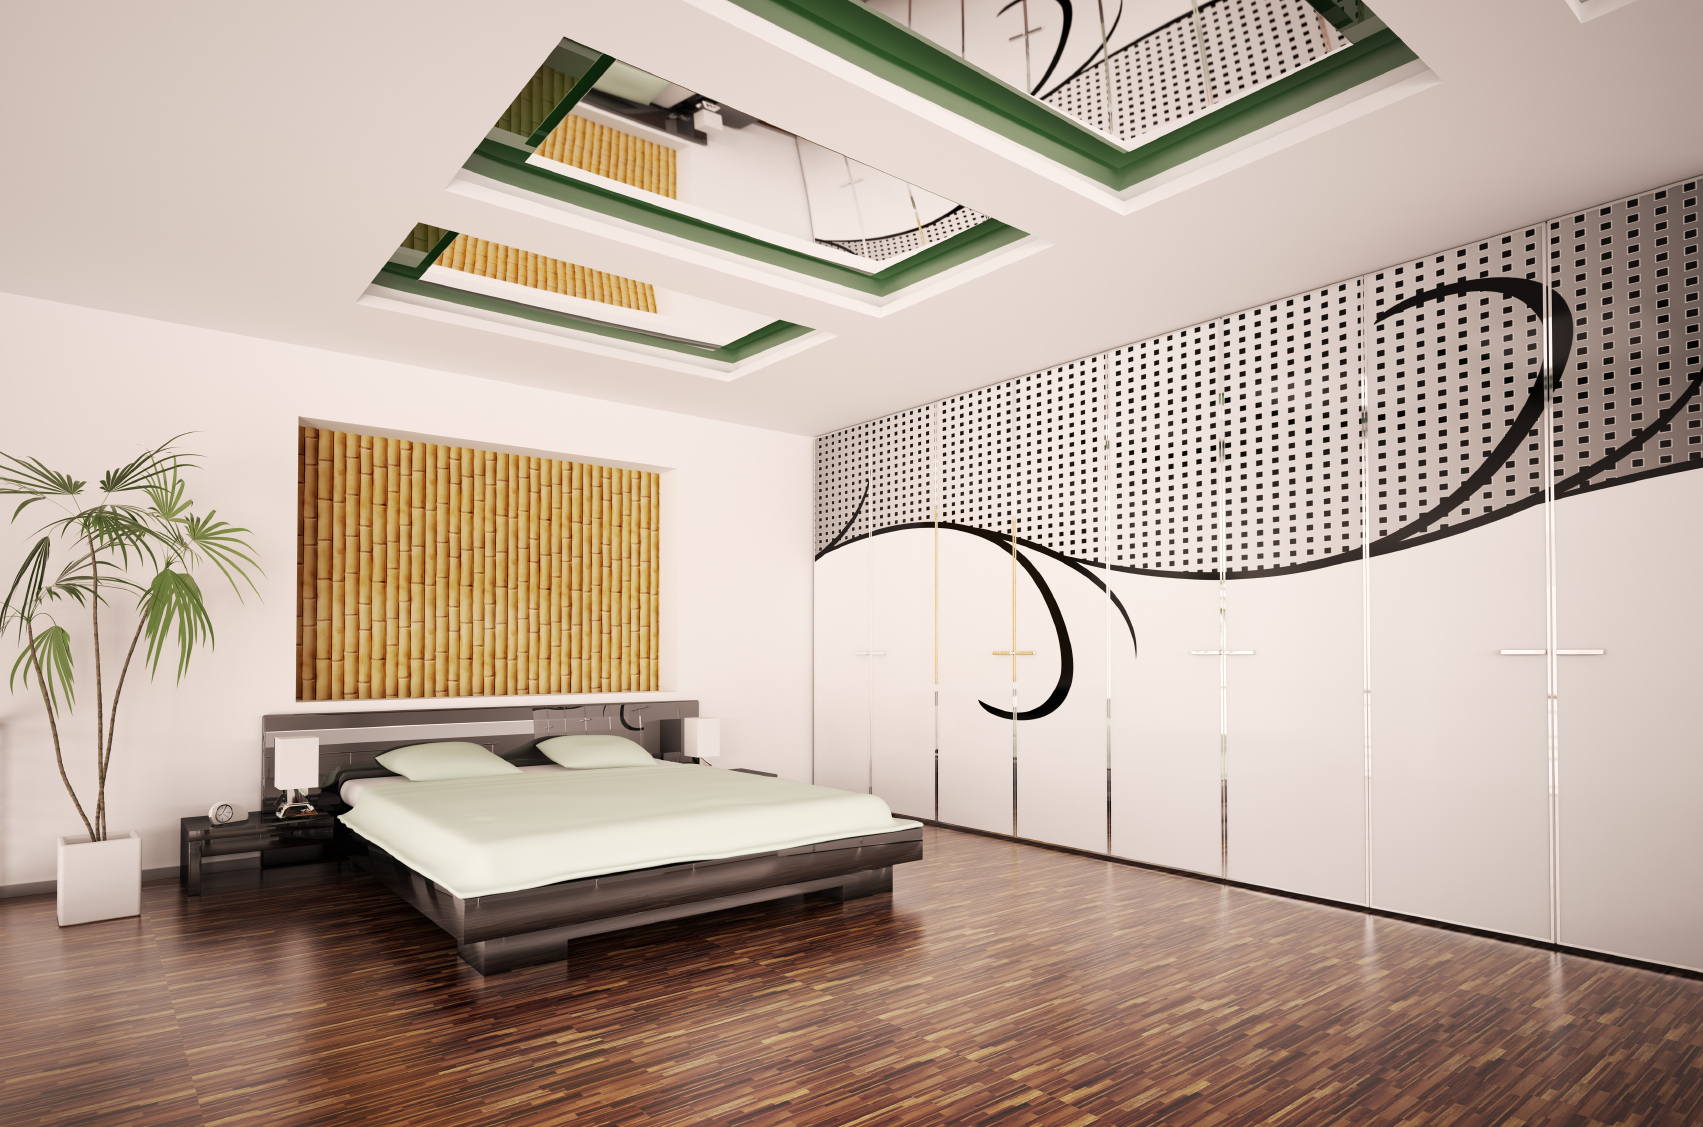 corridor style bamboo furniture